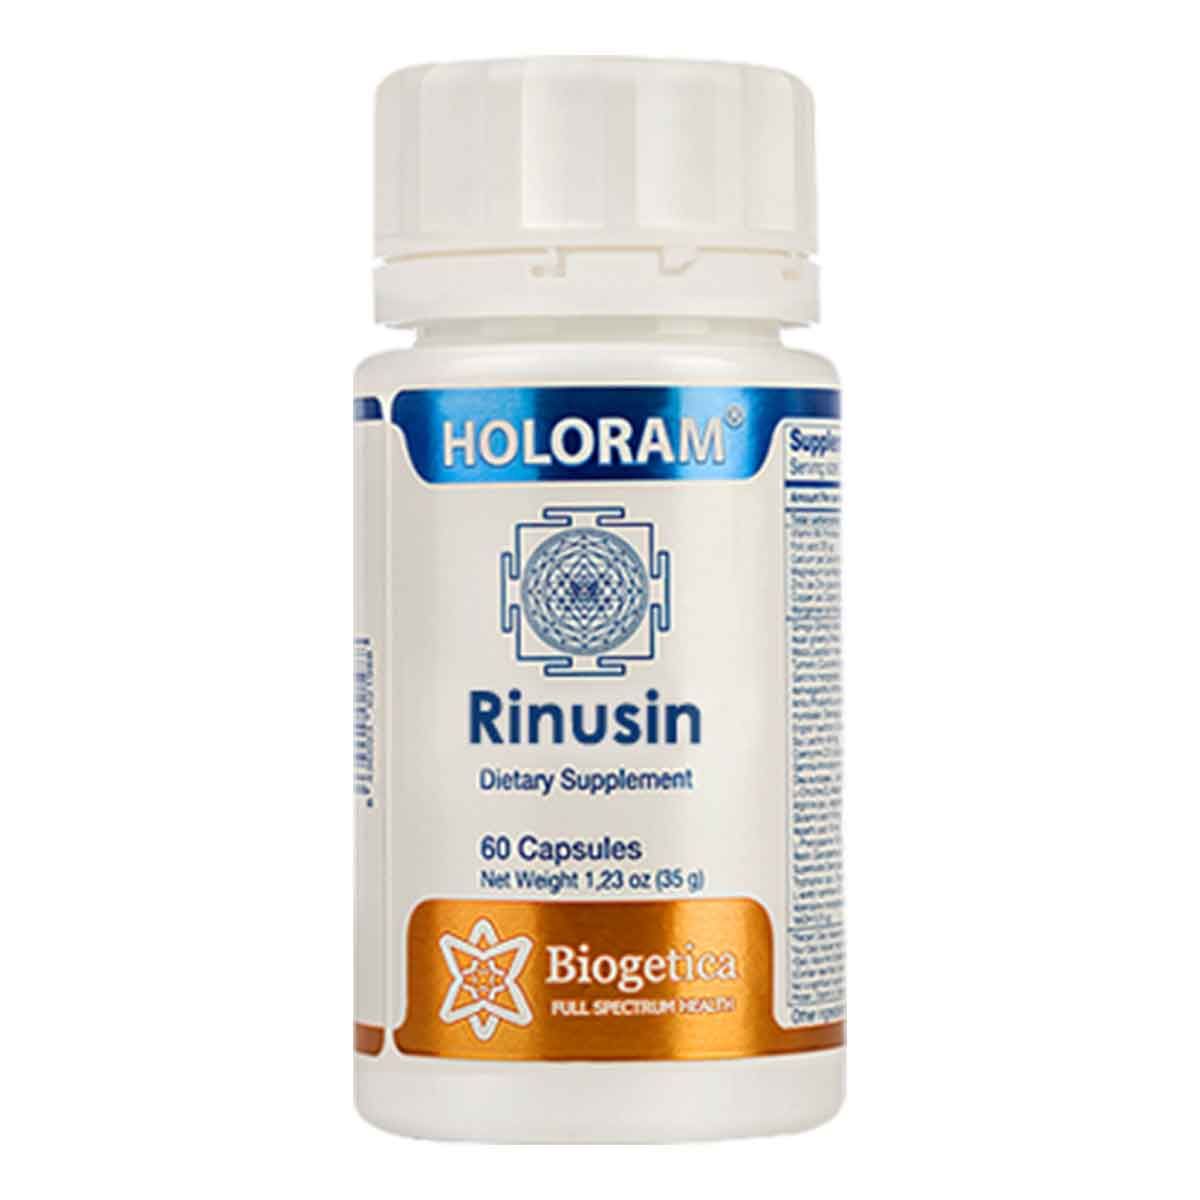 Biogetica Holoram Rinusin, 60 Capsules